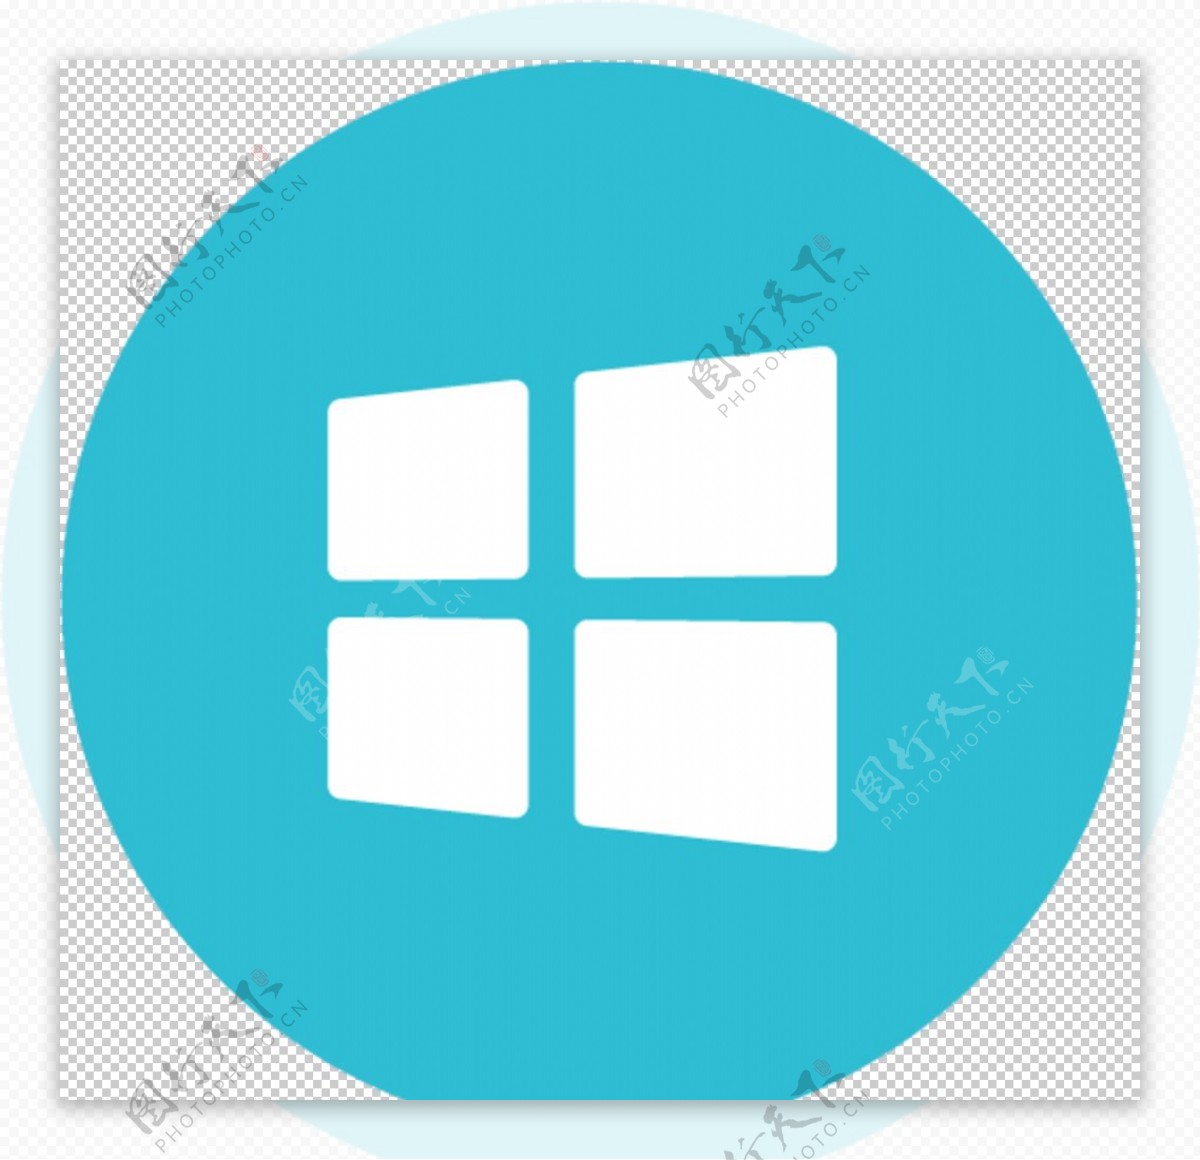 Windows1系统图标